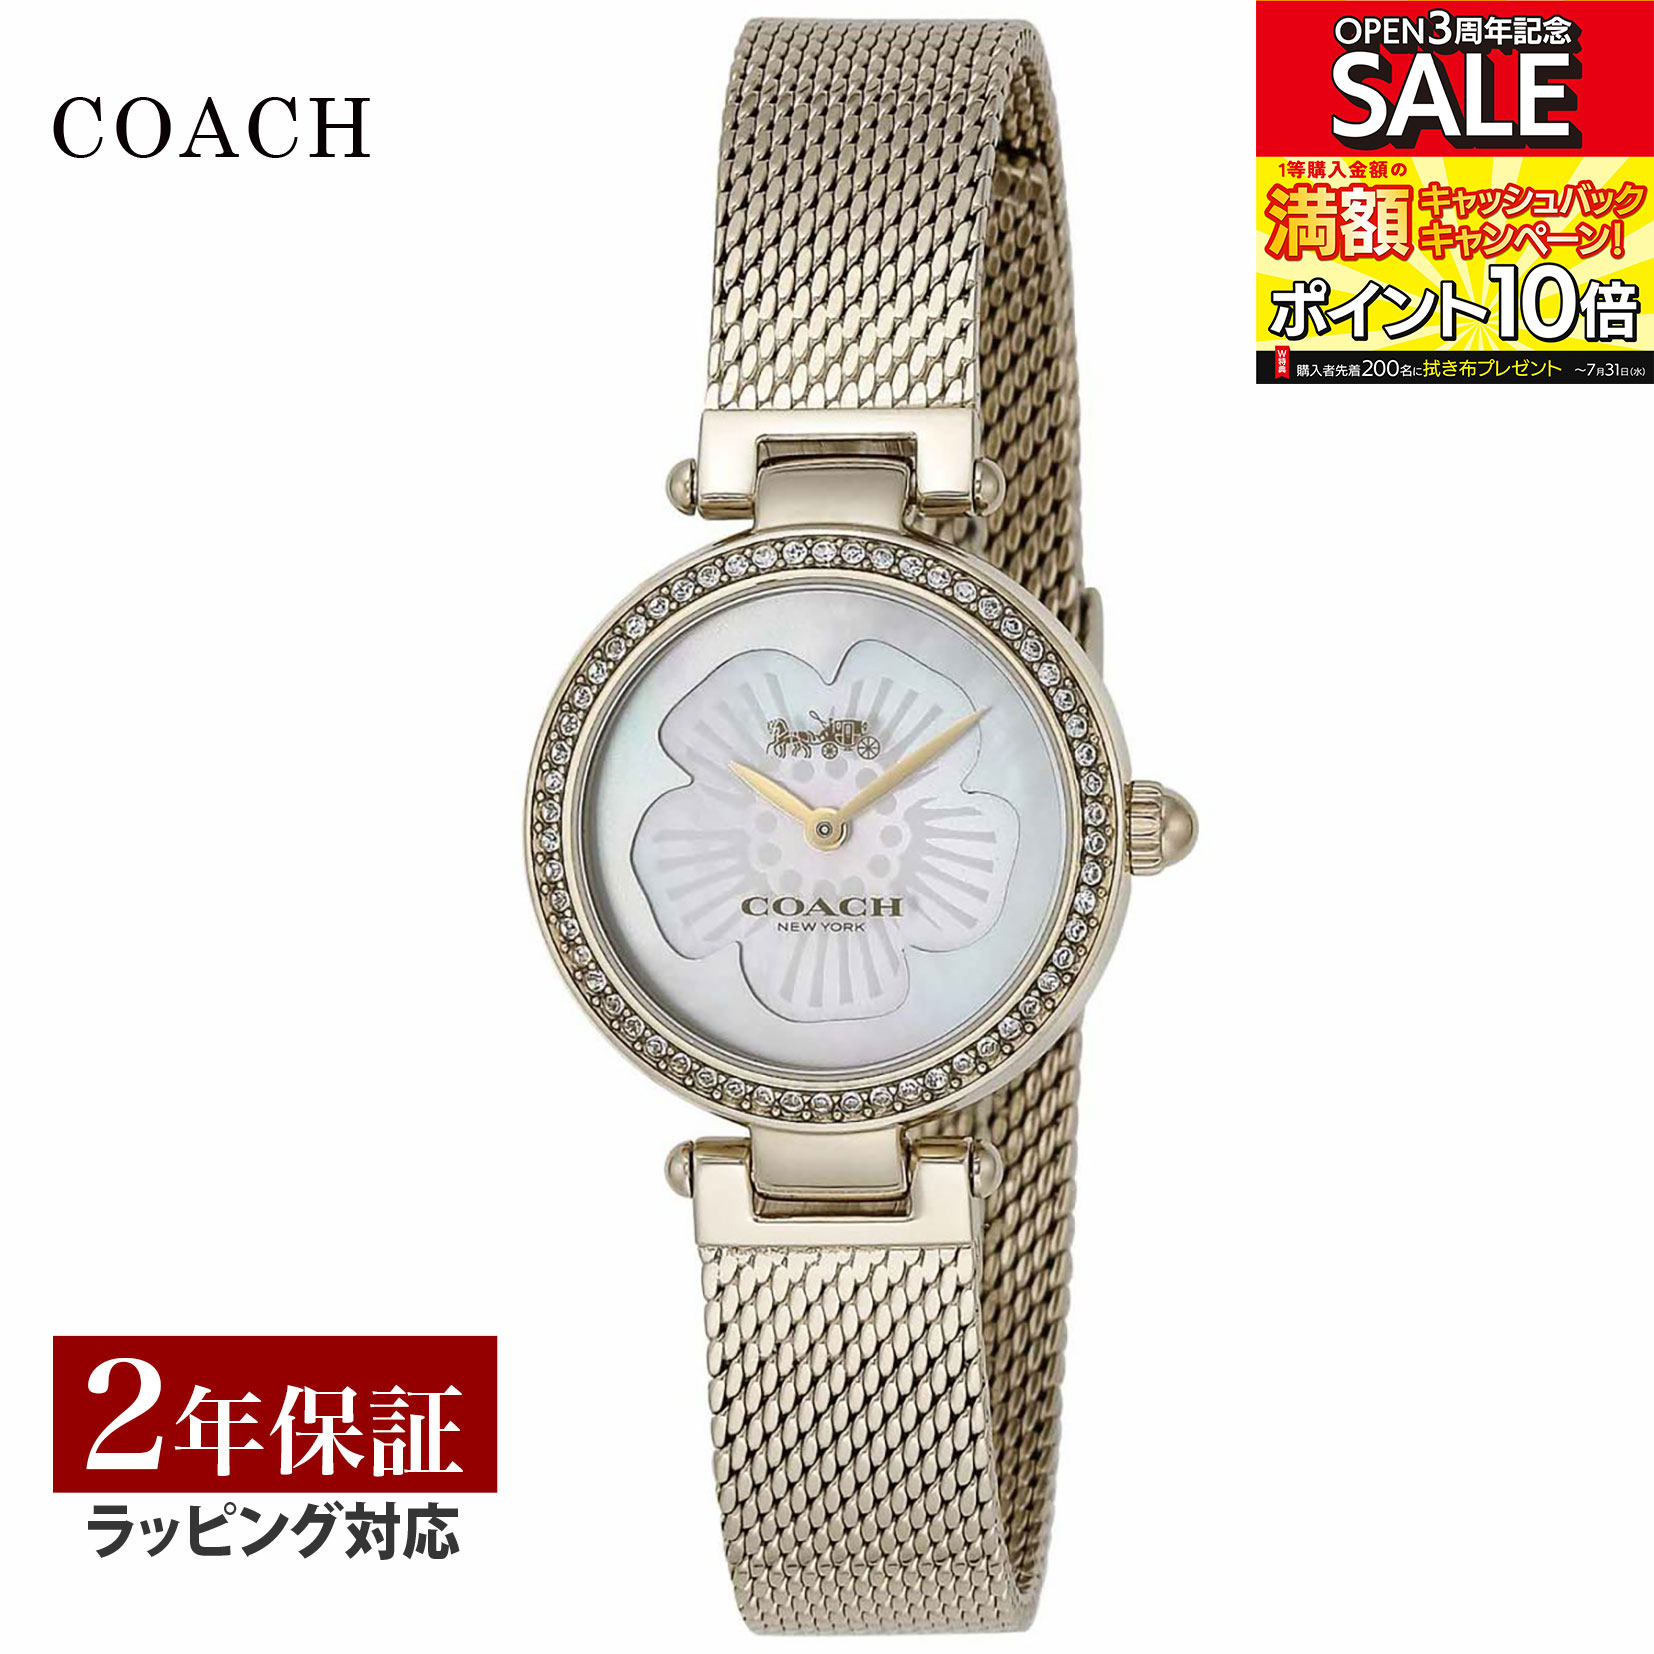 【数量限定 SALE】 コーチ COACH レディース 時計 PARK パーク クォーツ ホワイトパール 14503512 時計 腕時計 高級腕時計 ブランド